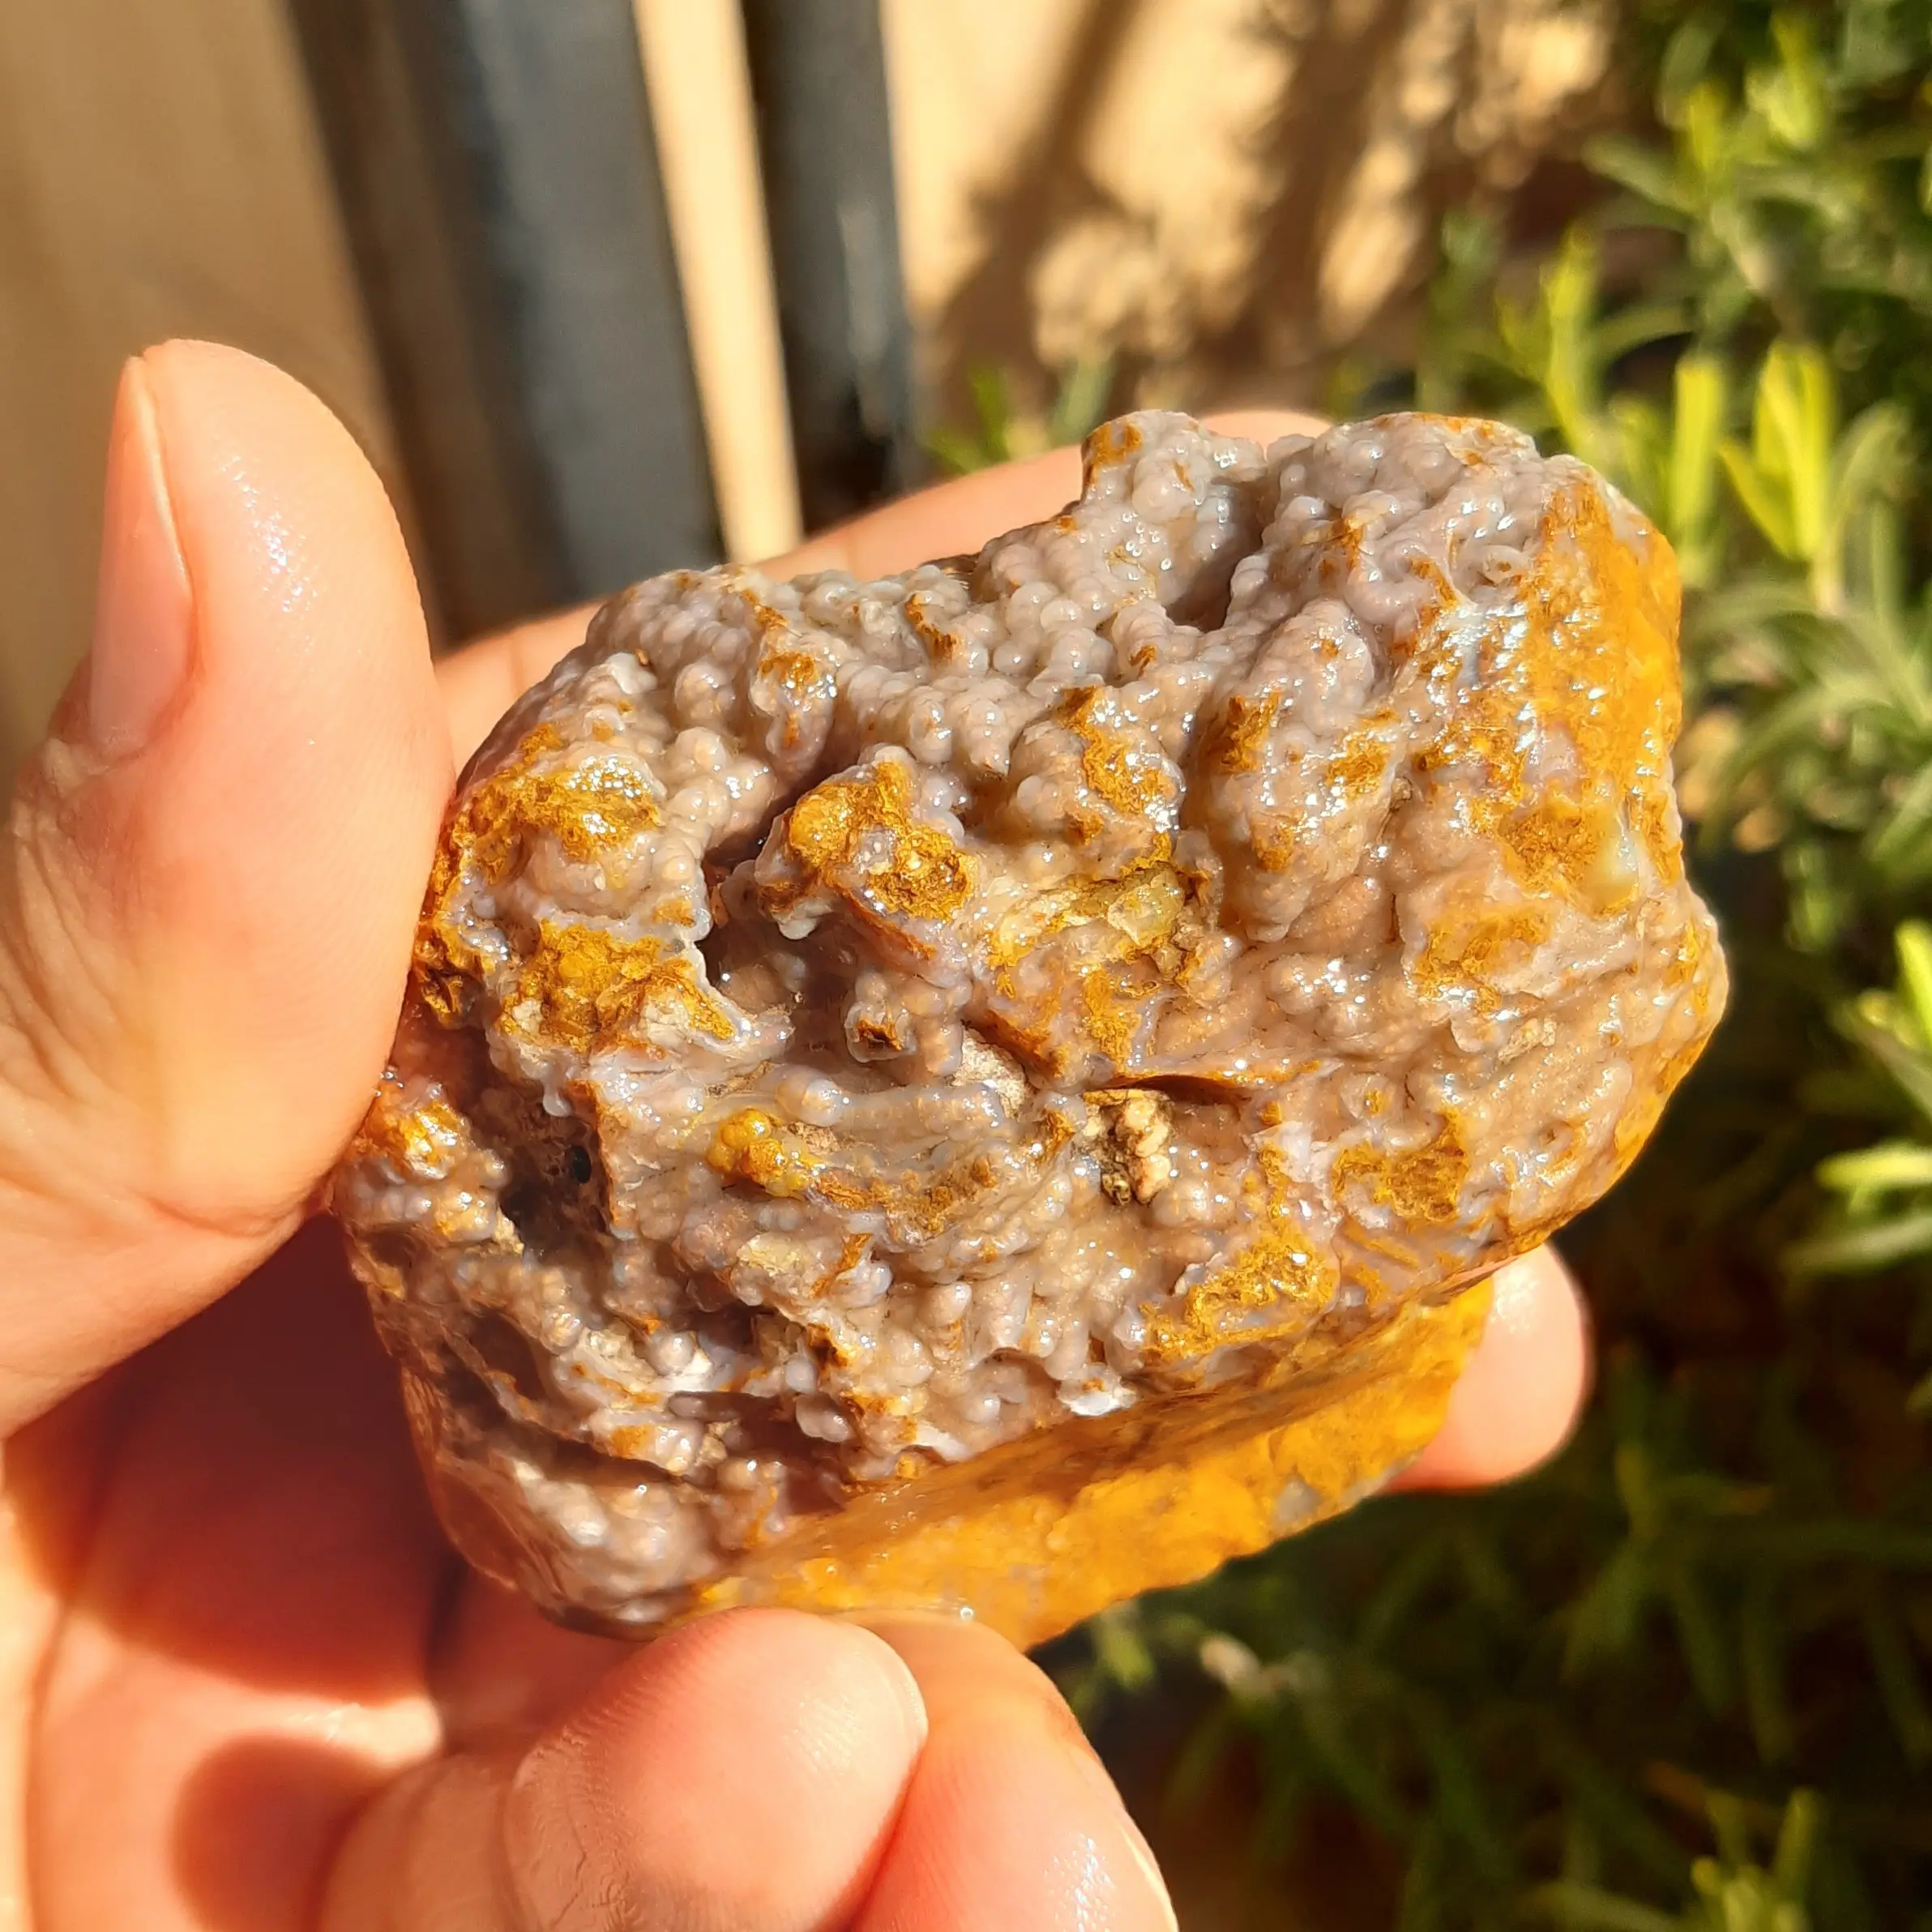 سنگ راف عقیق شجر خزه ای با سطح خوشه انگوری خاص و متفاوت برش نخورده  با قابلیت ساخت نگین